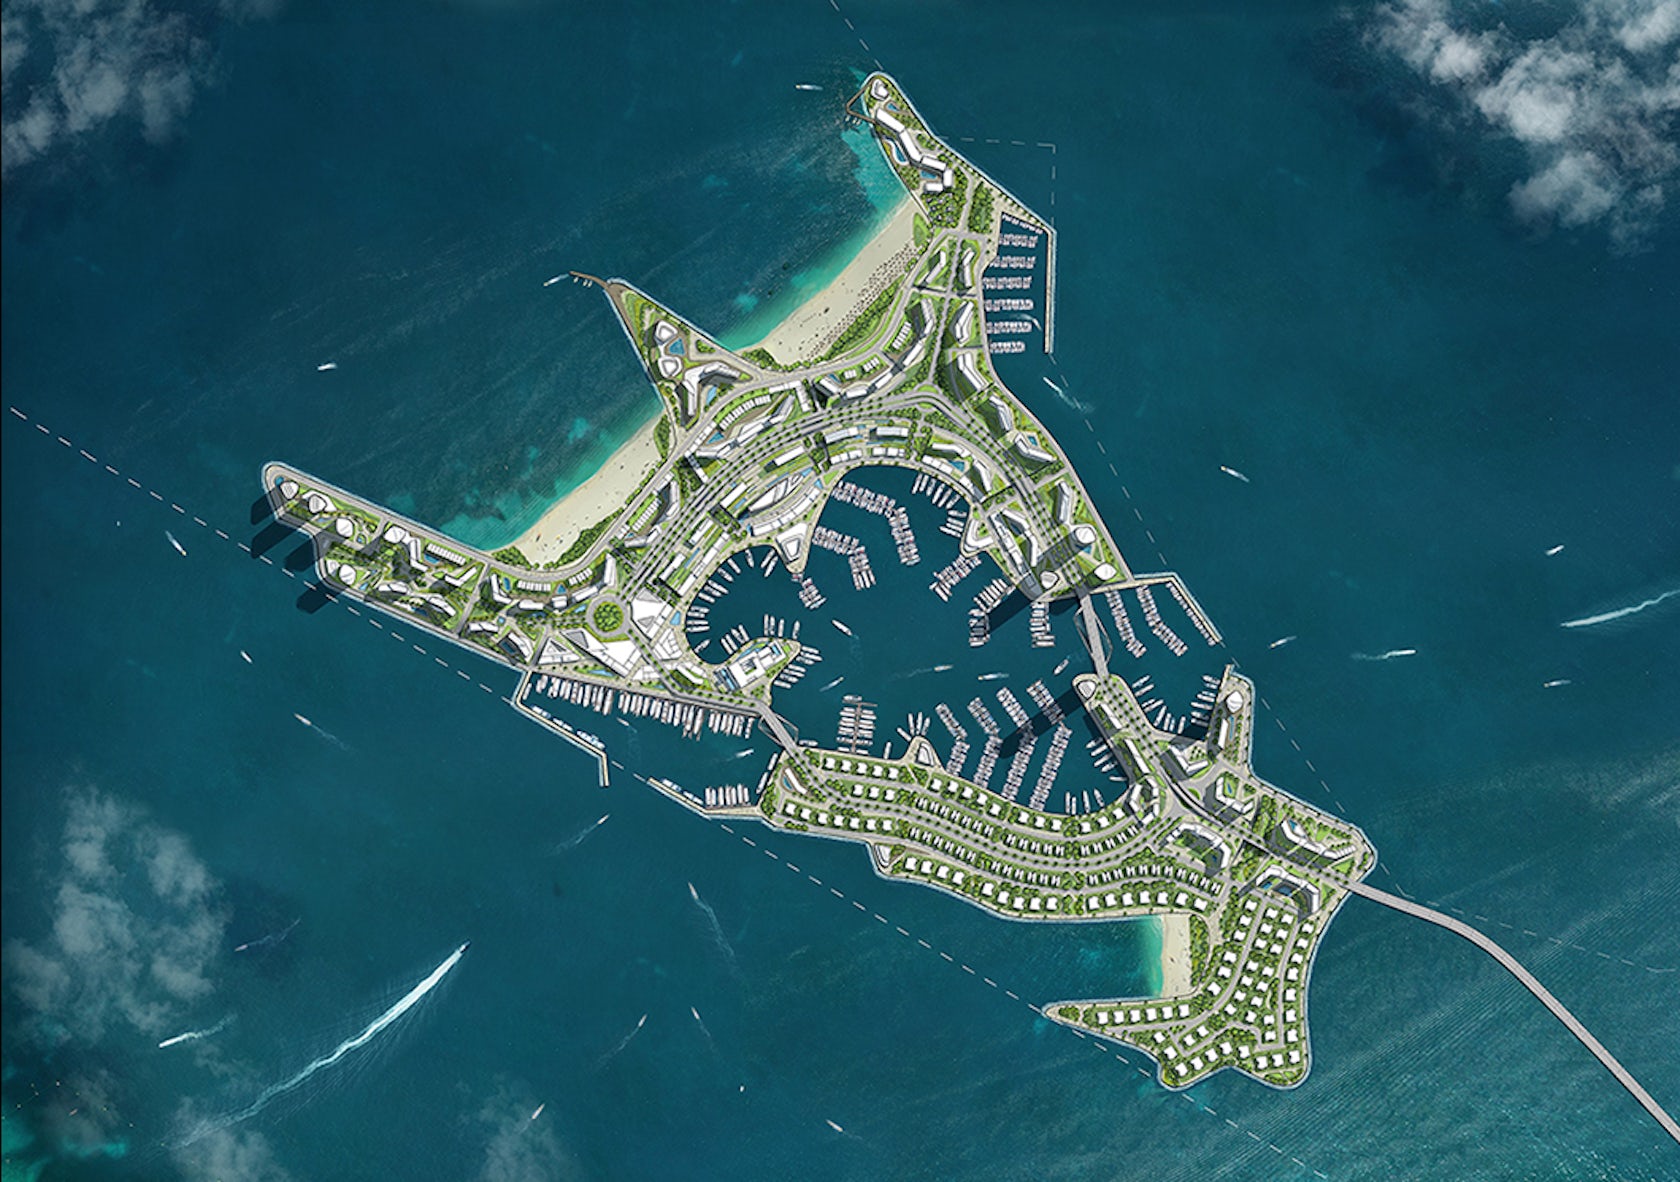 Marina islands